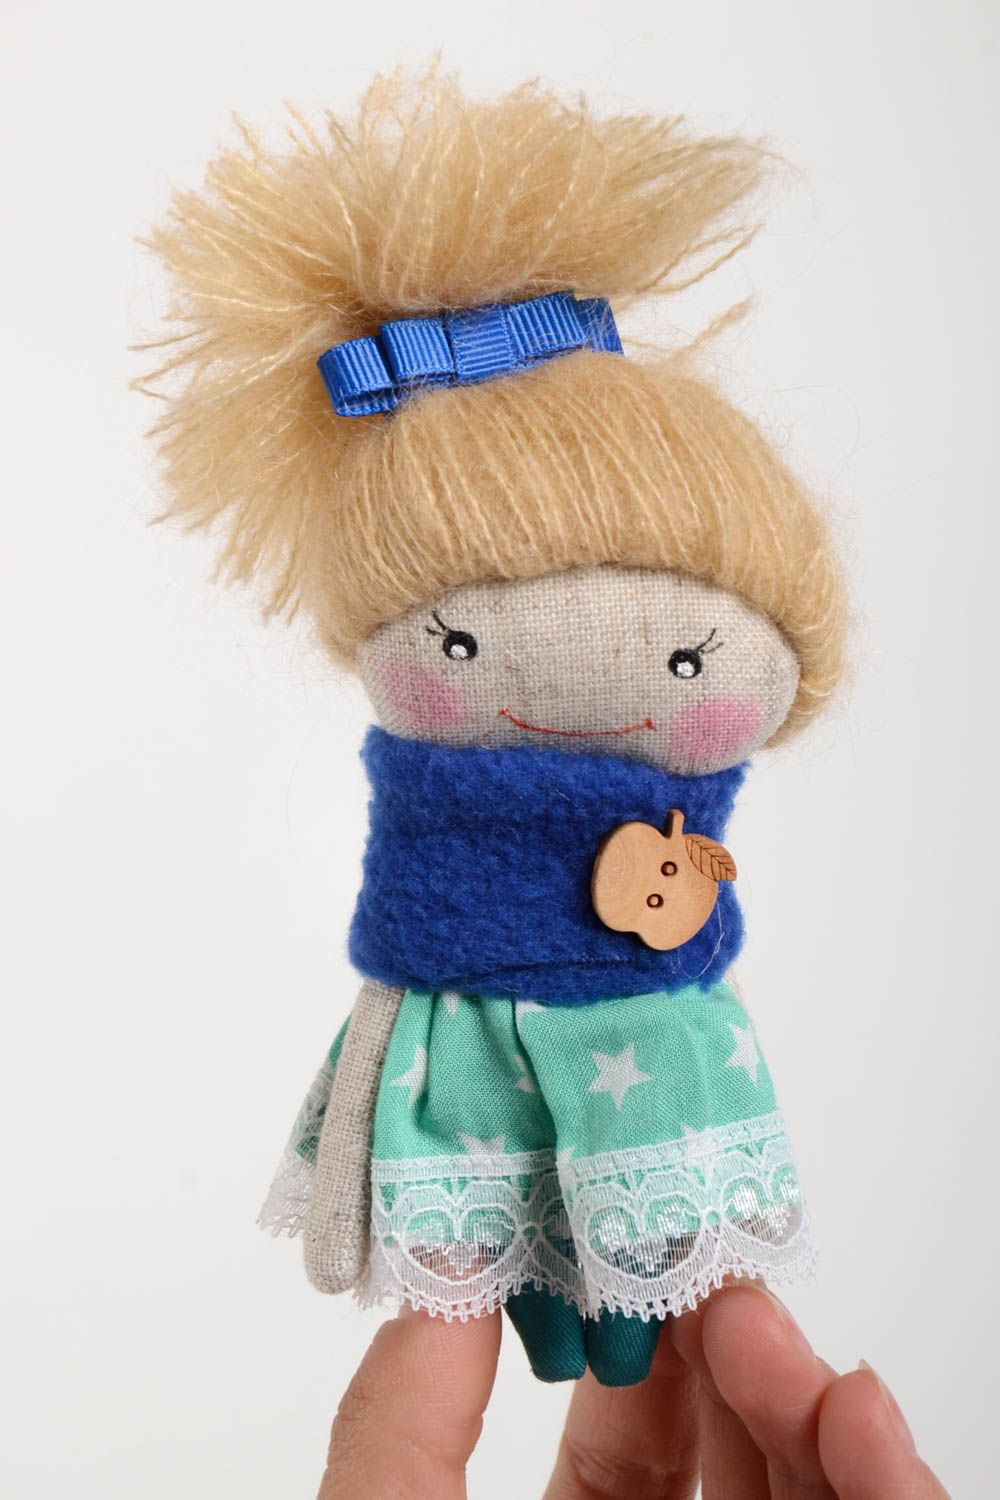 Handmade doll for children interior toys nursery decor present for girl photo 2